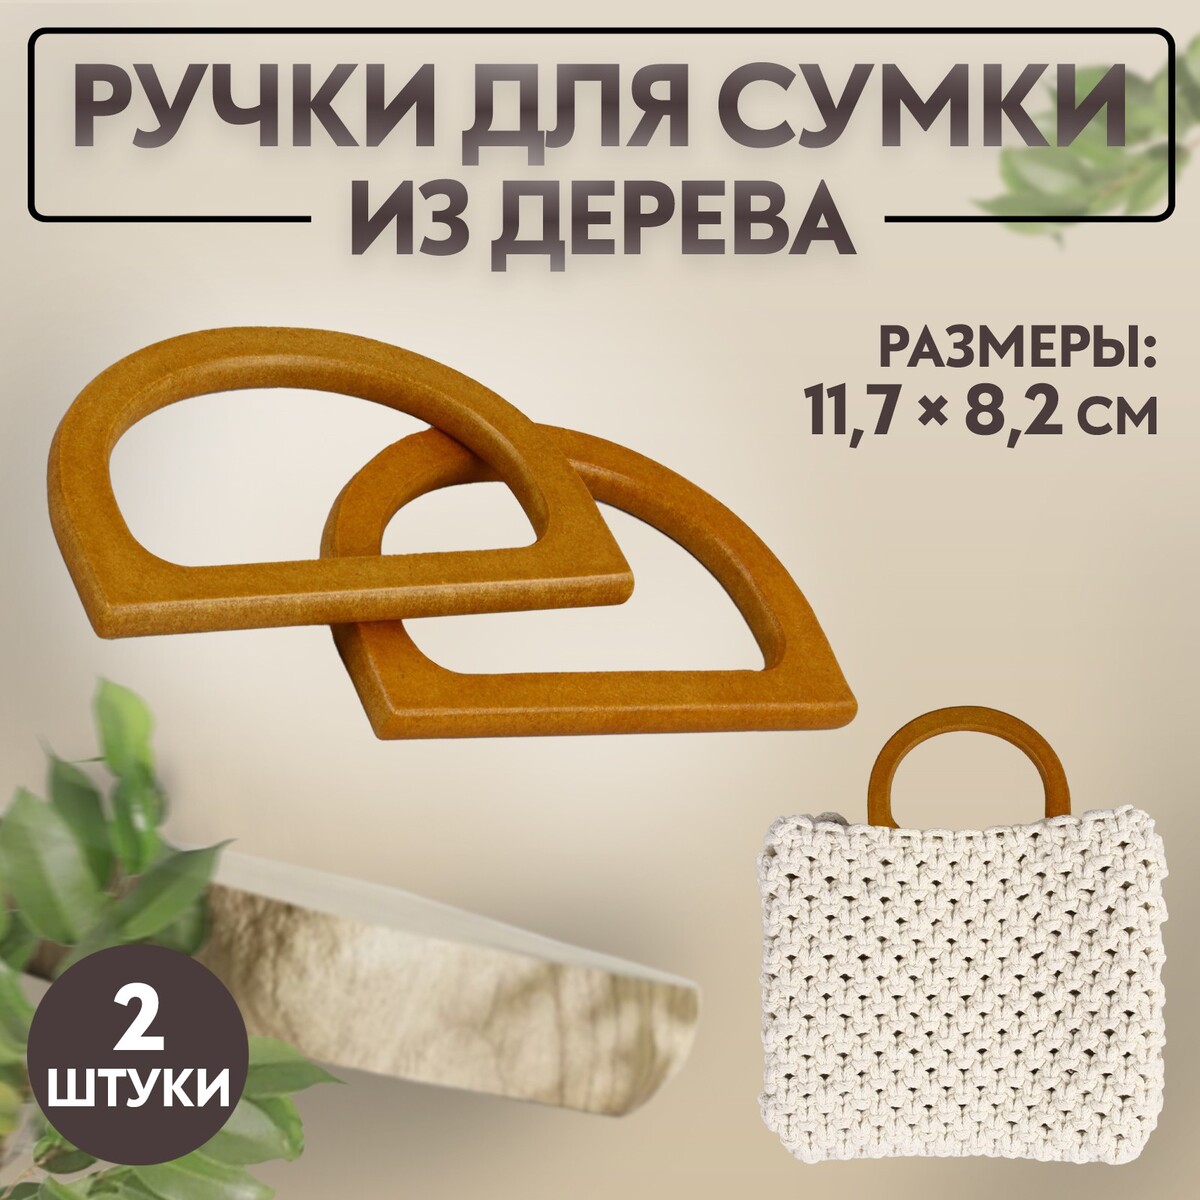 Ручки для сумки деревянные, 11,7 × 8,2 см, 2 шт, цвет коричневый ручки для сумок деревянные плетеные d 9 8 × 5 9 13 5 × 9 5 см 2 шт коричневый